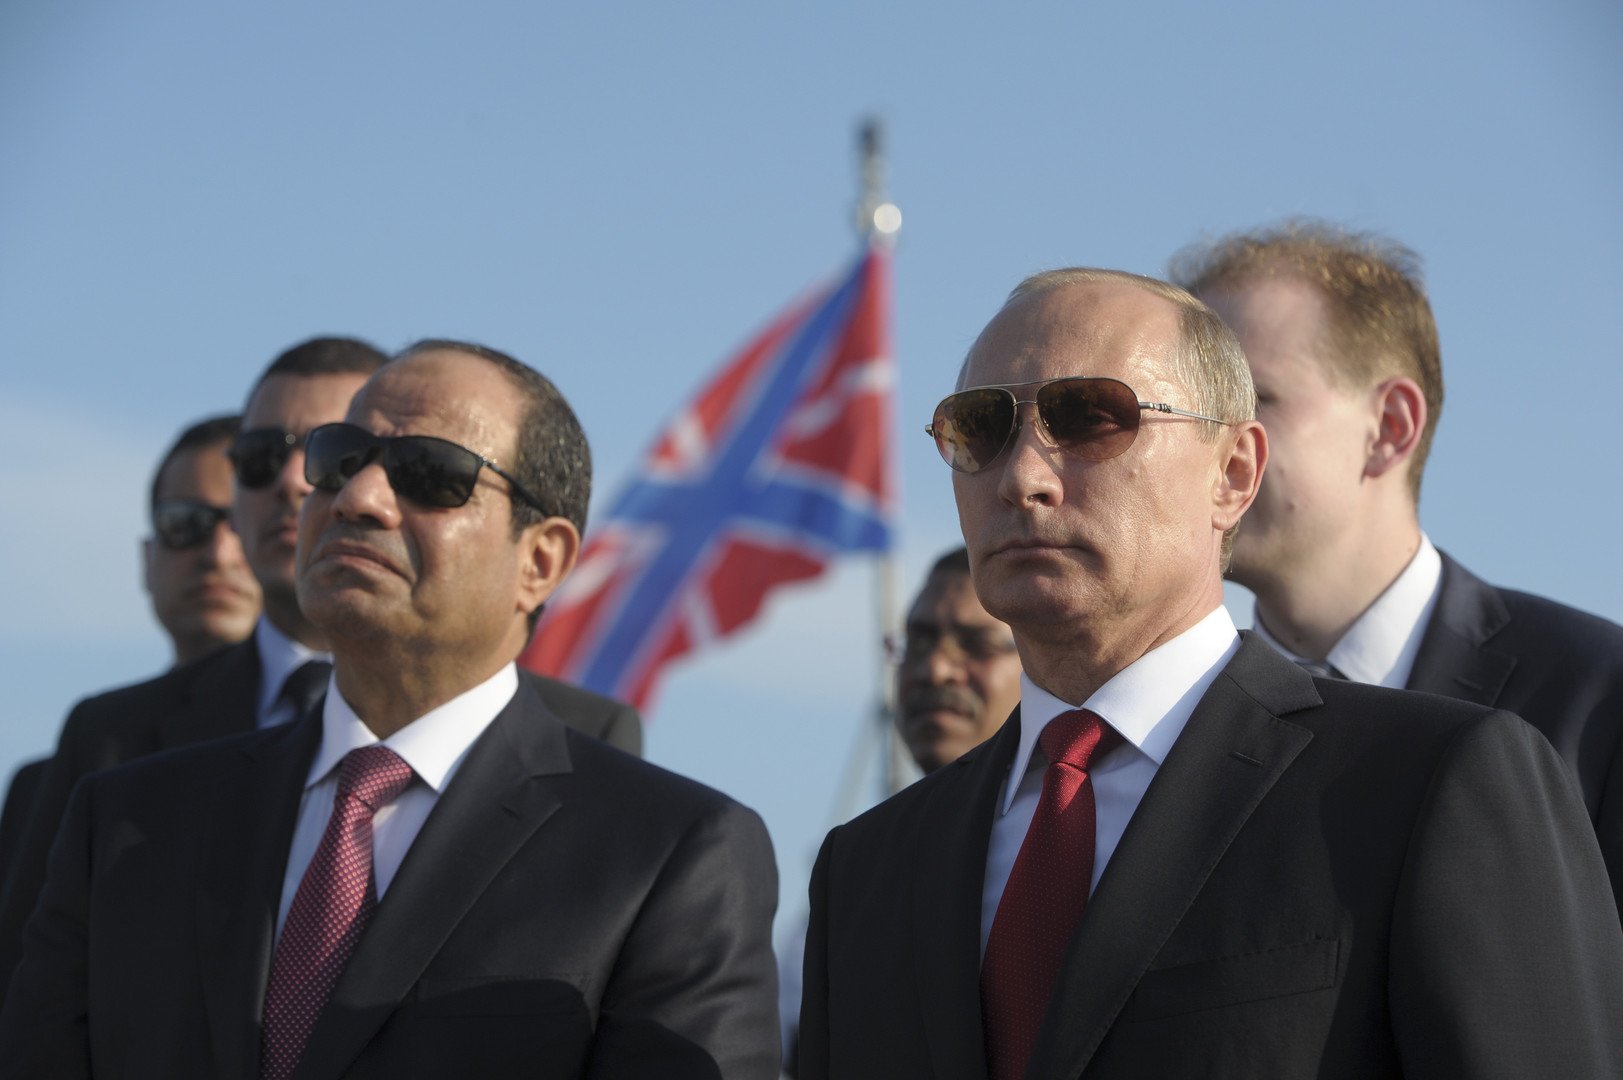 الرئيس الروسي بوتين ونظيره المصري يحضران مراسم الترحيب على متن طراد في ميناء سوتشي 12 أغسطس 2014